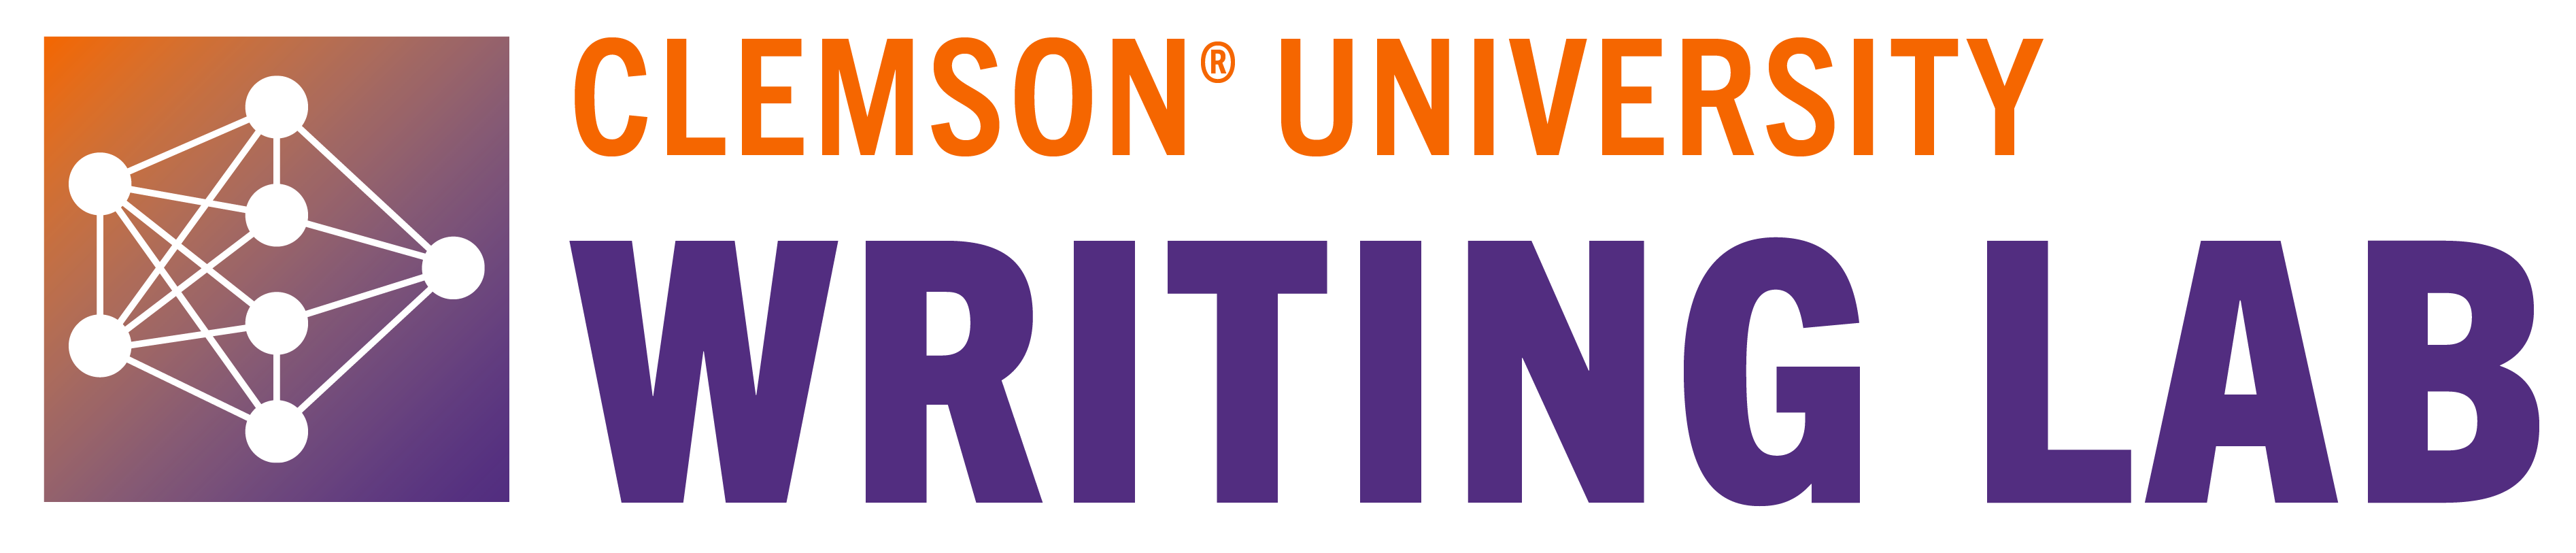 writing-lab-logo